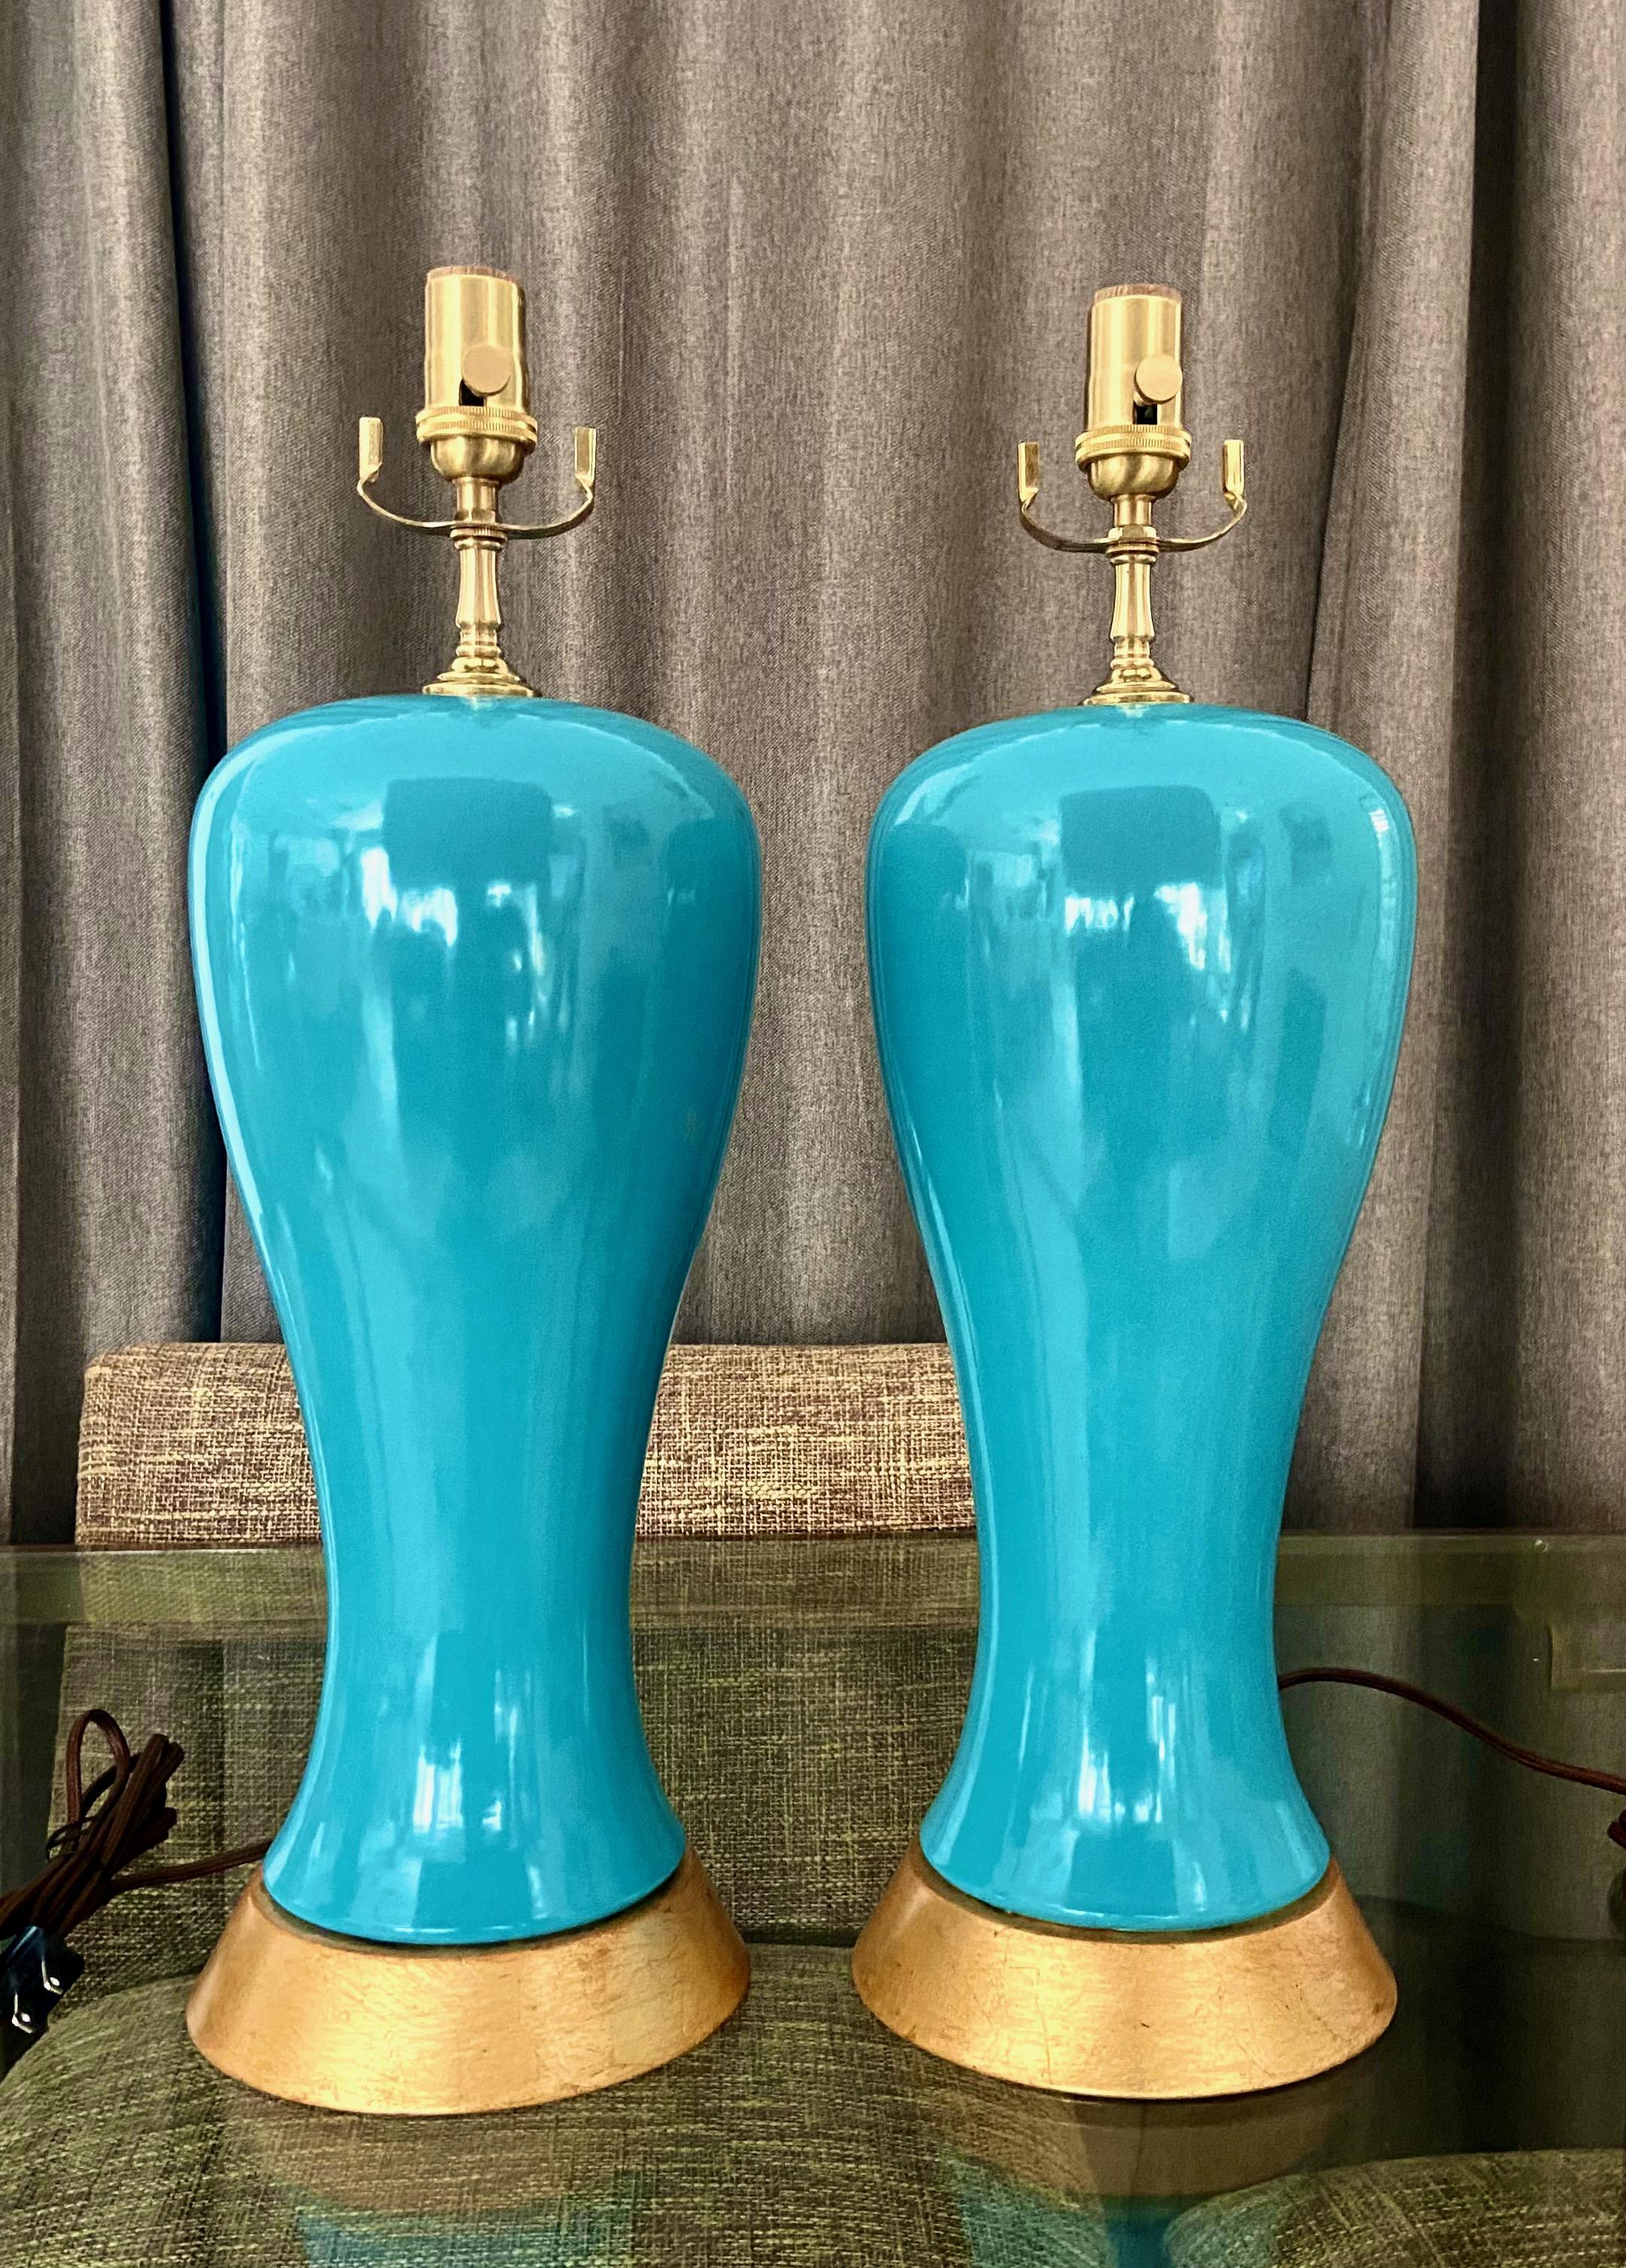 Paire de lampes de table modernes en céramique turquoise de forme prune sur des bases en métal doré. Les vases ont une touche asiatique et s'intègrent parfaitement dans un cadre moderne ou traditionnel. Nouvelles prises à 3 voies en laiton, raccords